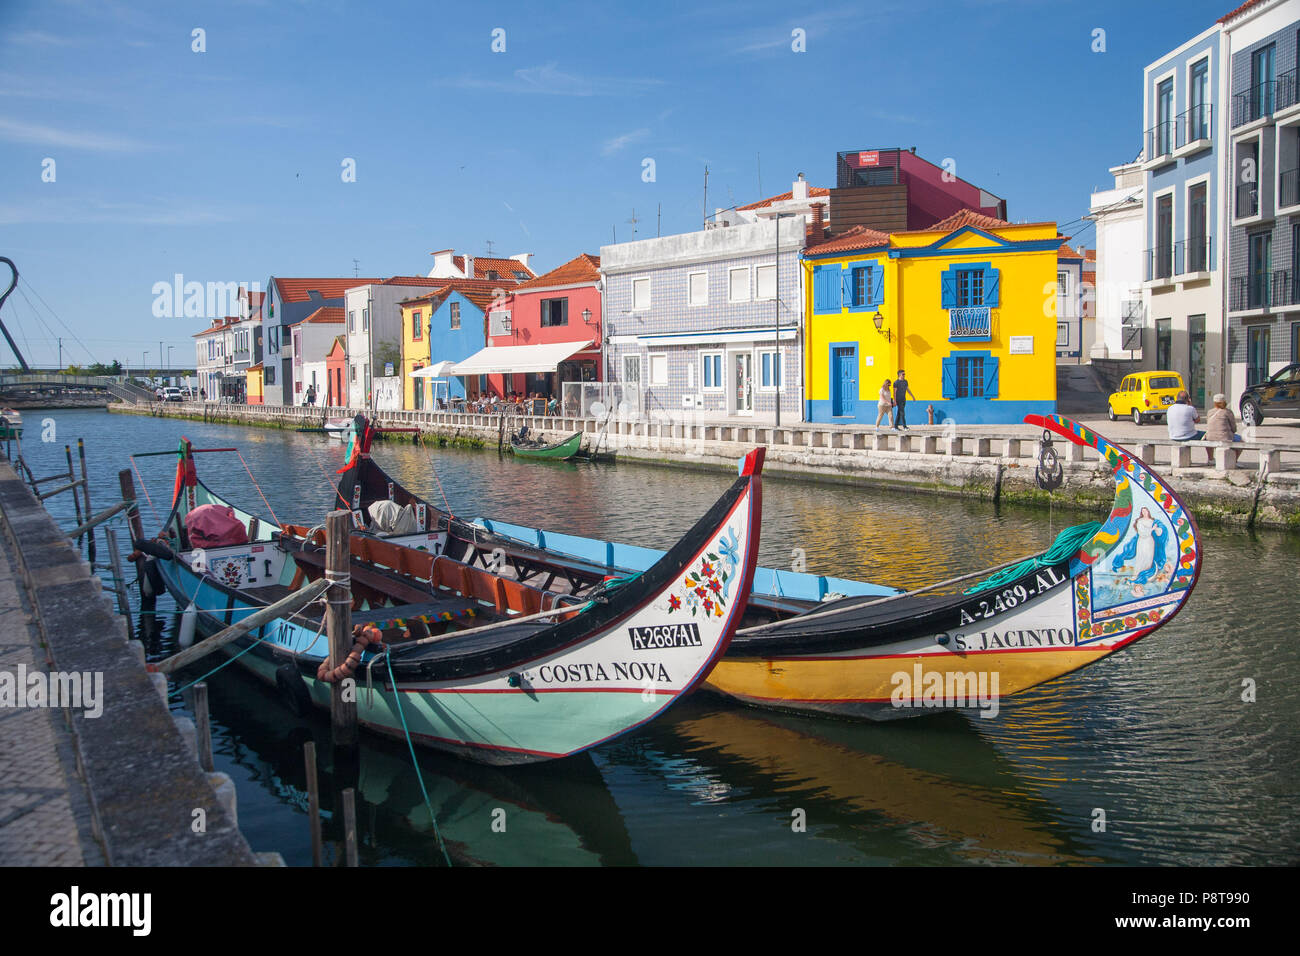 Deux Moilceiros bateaux colorés (à l'origine utilisée pour la collecte des algues) amarré près de maisons de pêcheurs traditionnels sur un canal à Aveiro, Portugal Banque D'Images